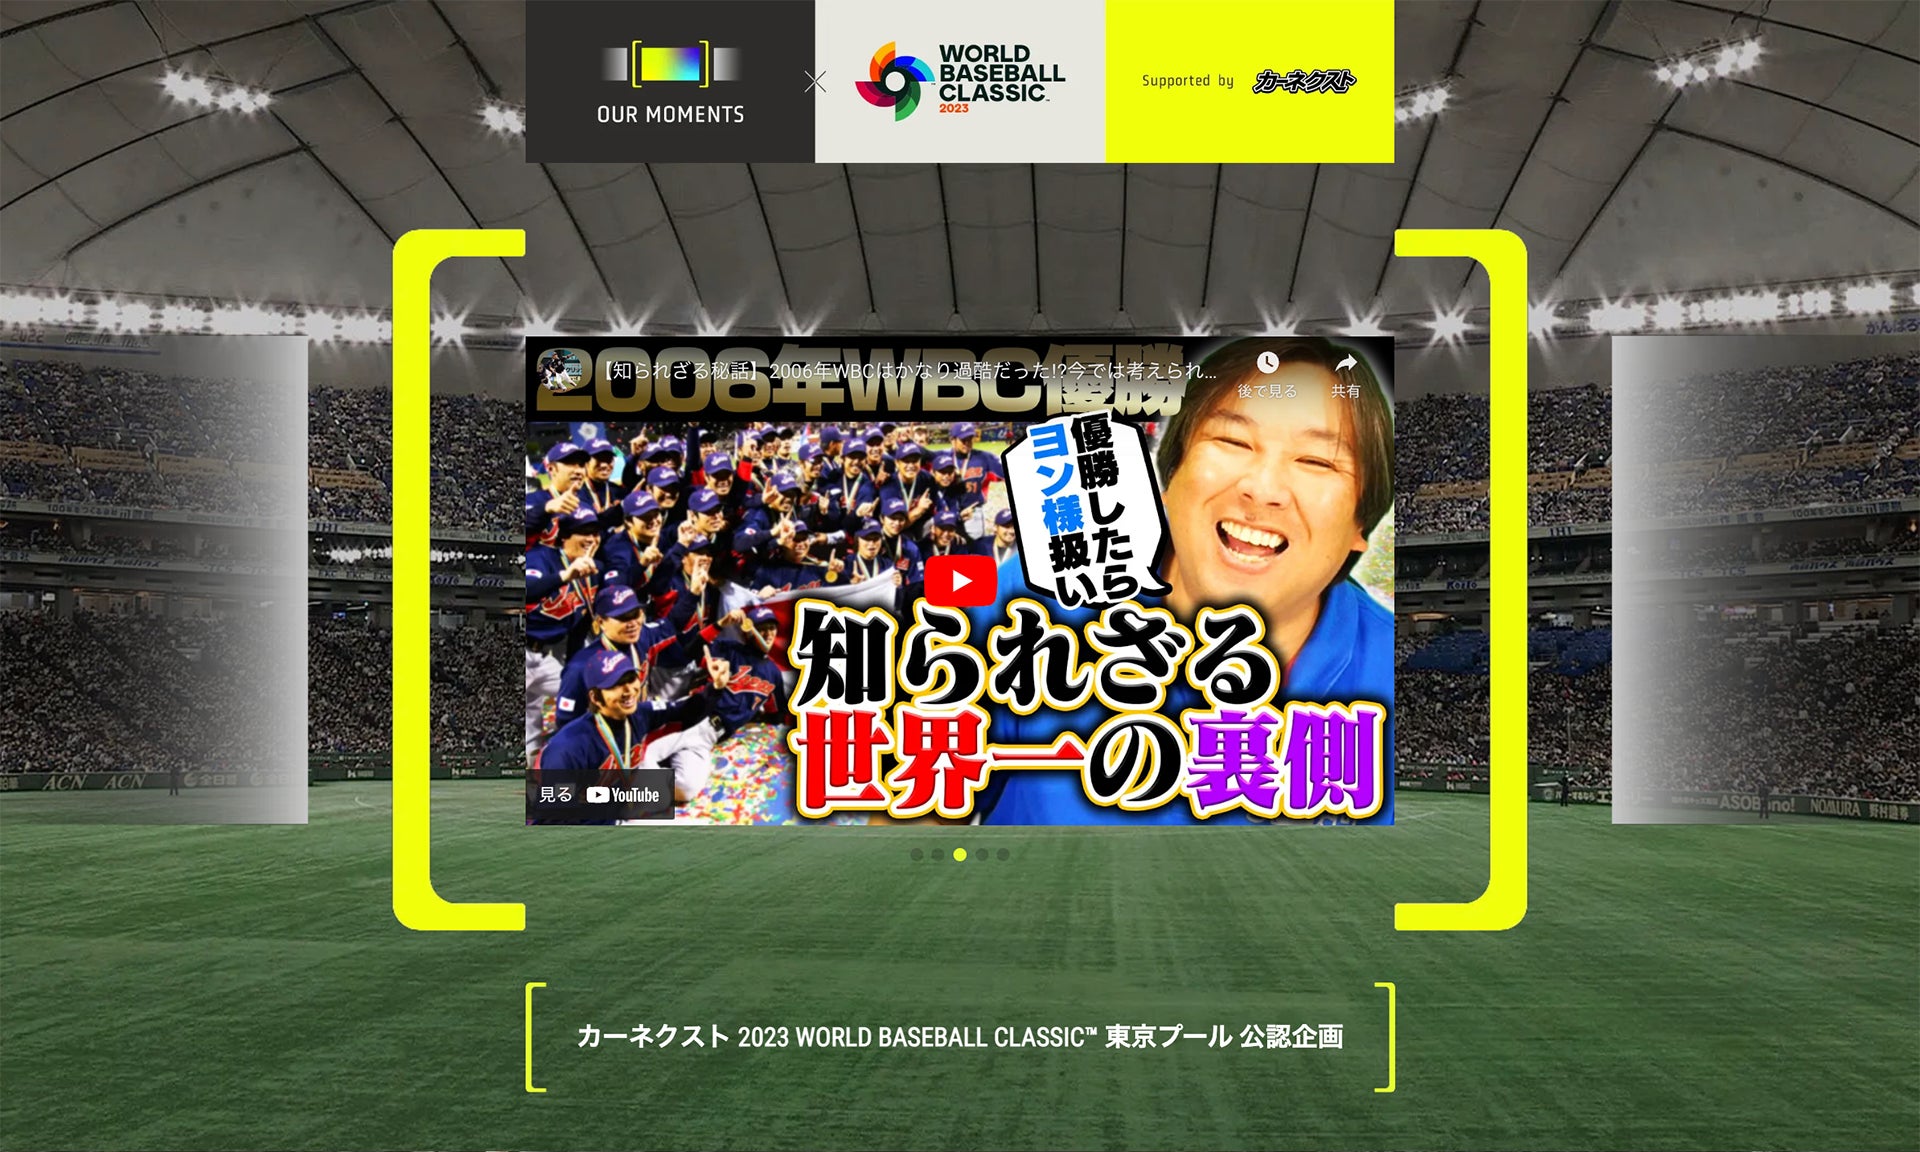 『カーネクスト侍ジャパンシリーズ2023 宮崎』にて、始球式が開催されました。